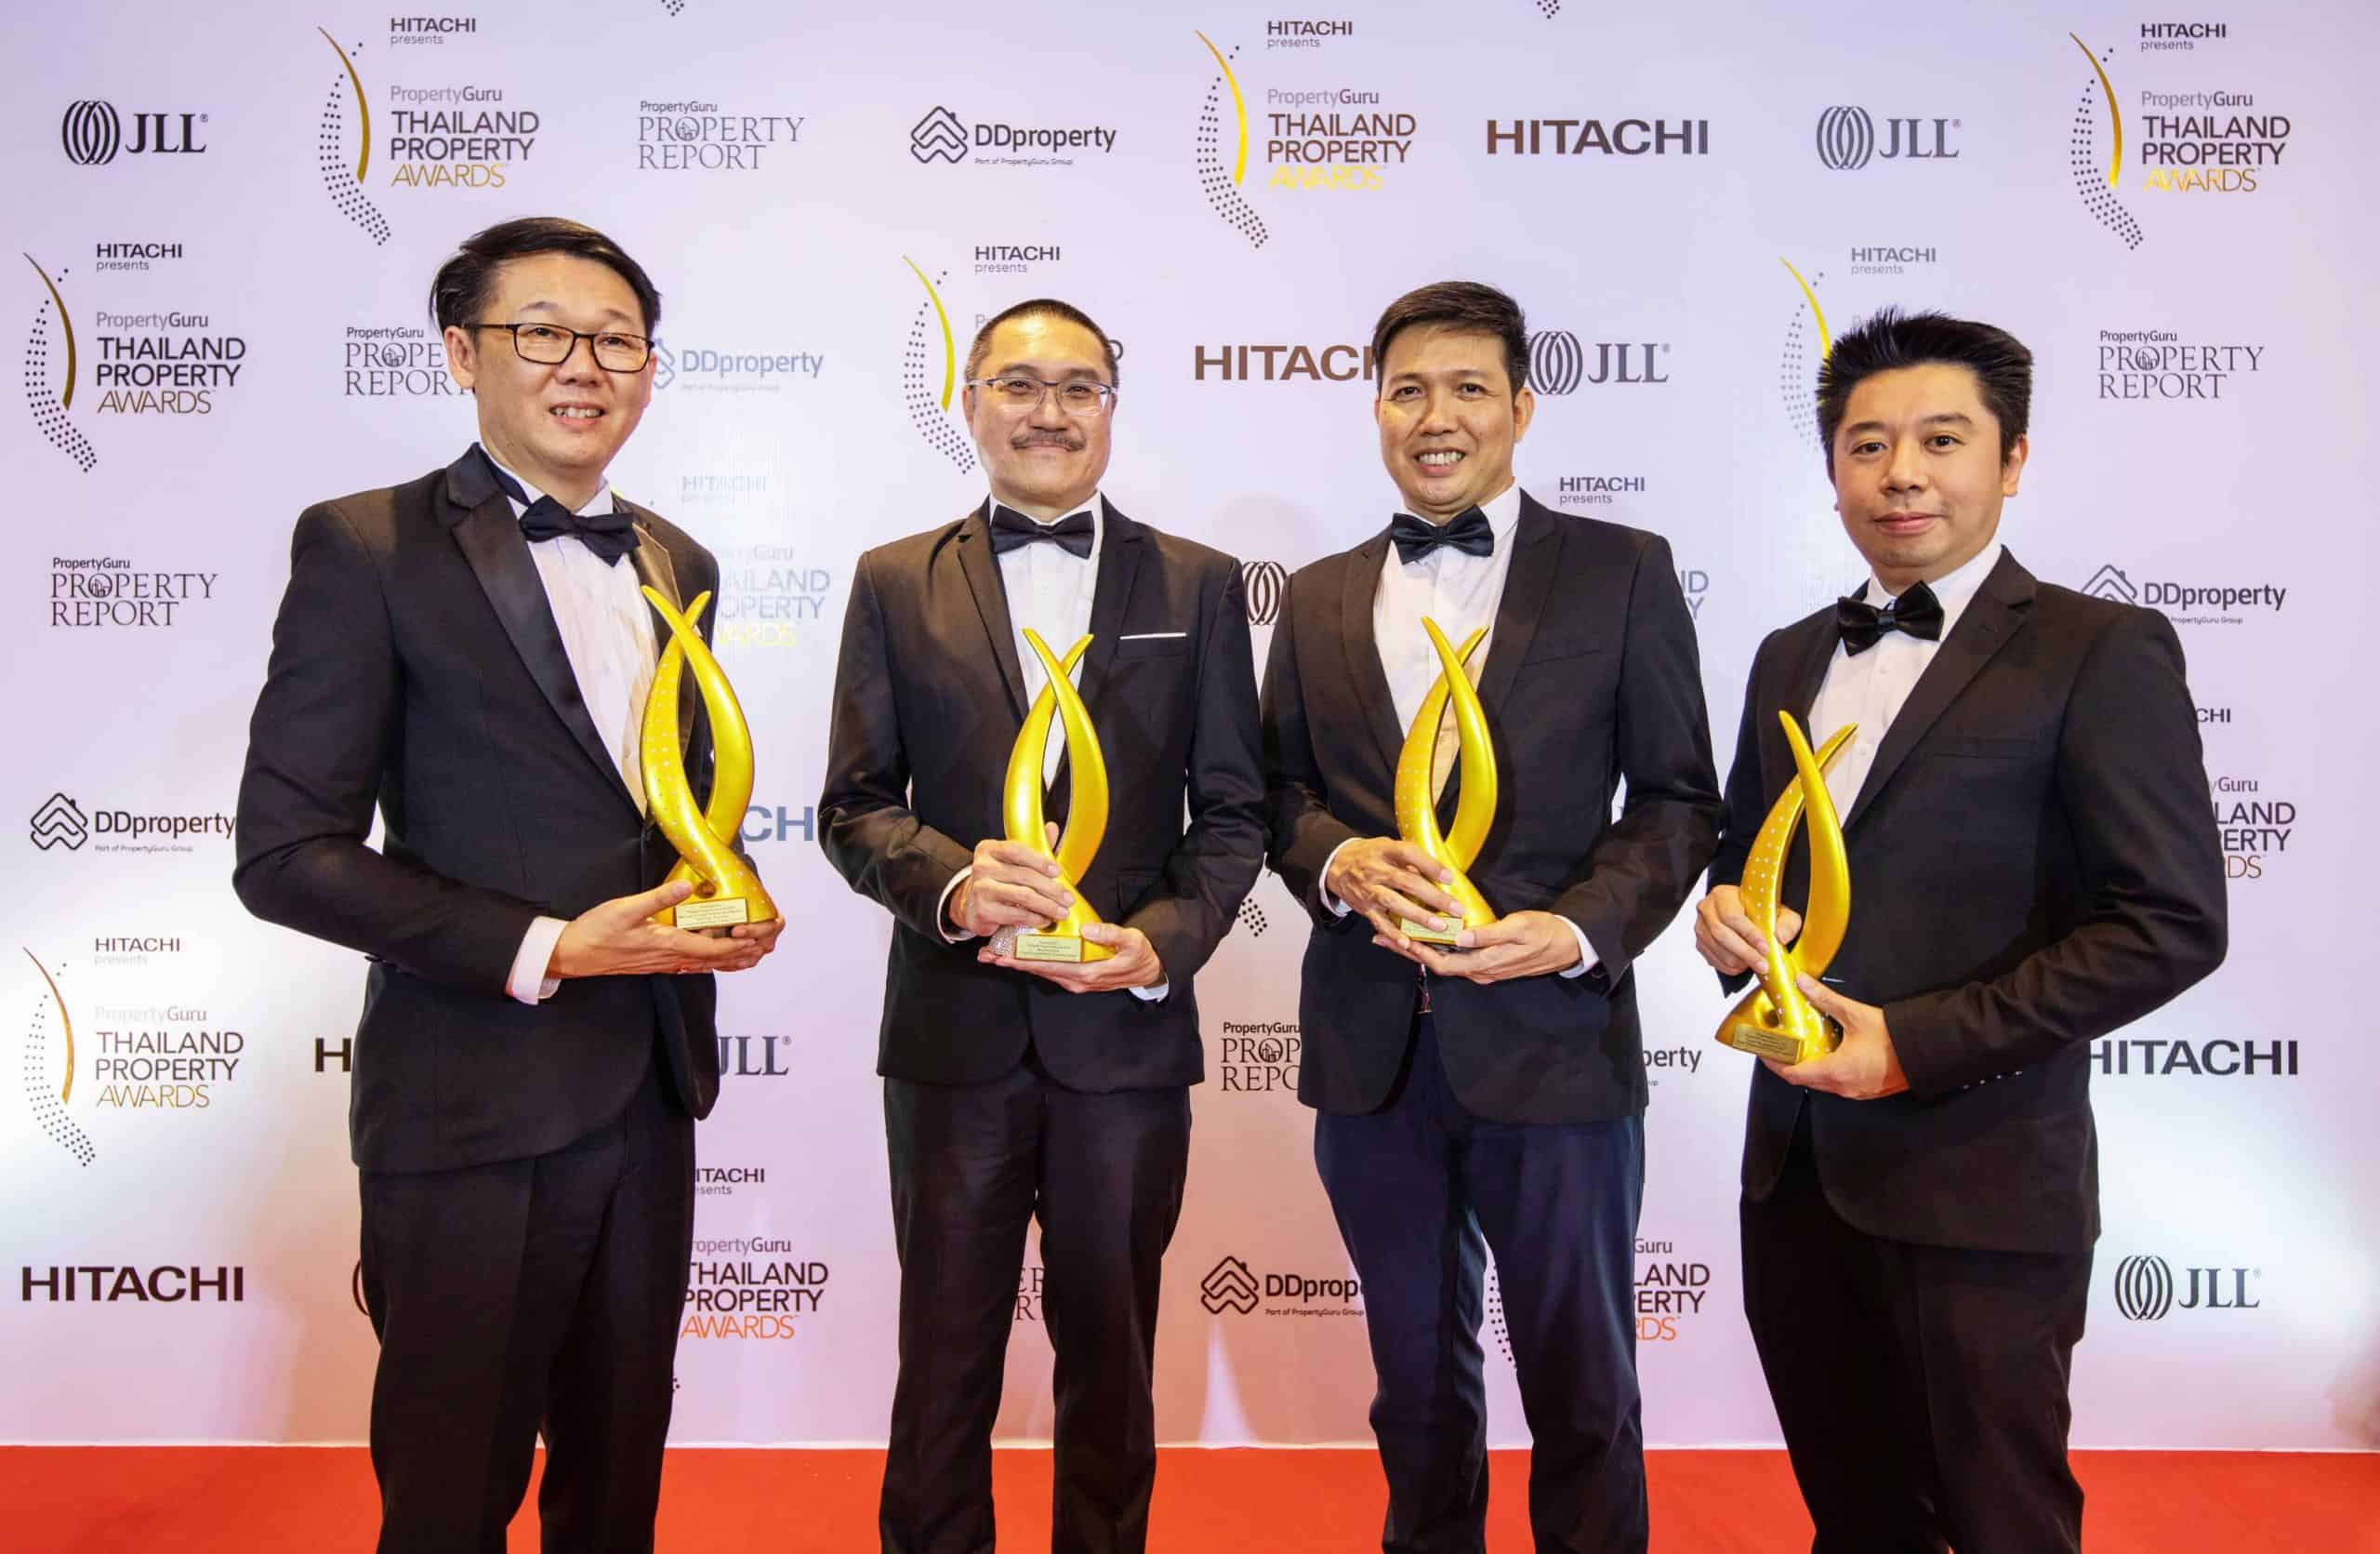 “ออริจิ้น” กวาด 4 รางวัลคุณภาพ จากเวที “Property Guru Thailand Property Awards 2020”